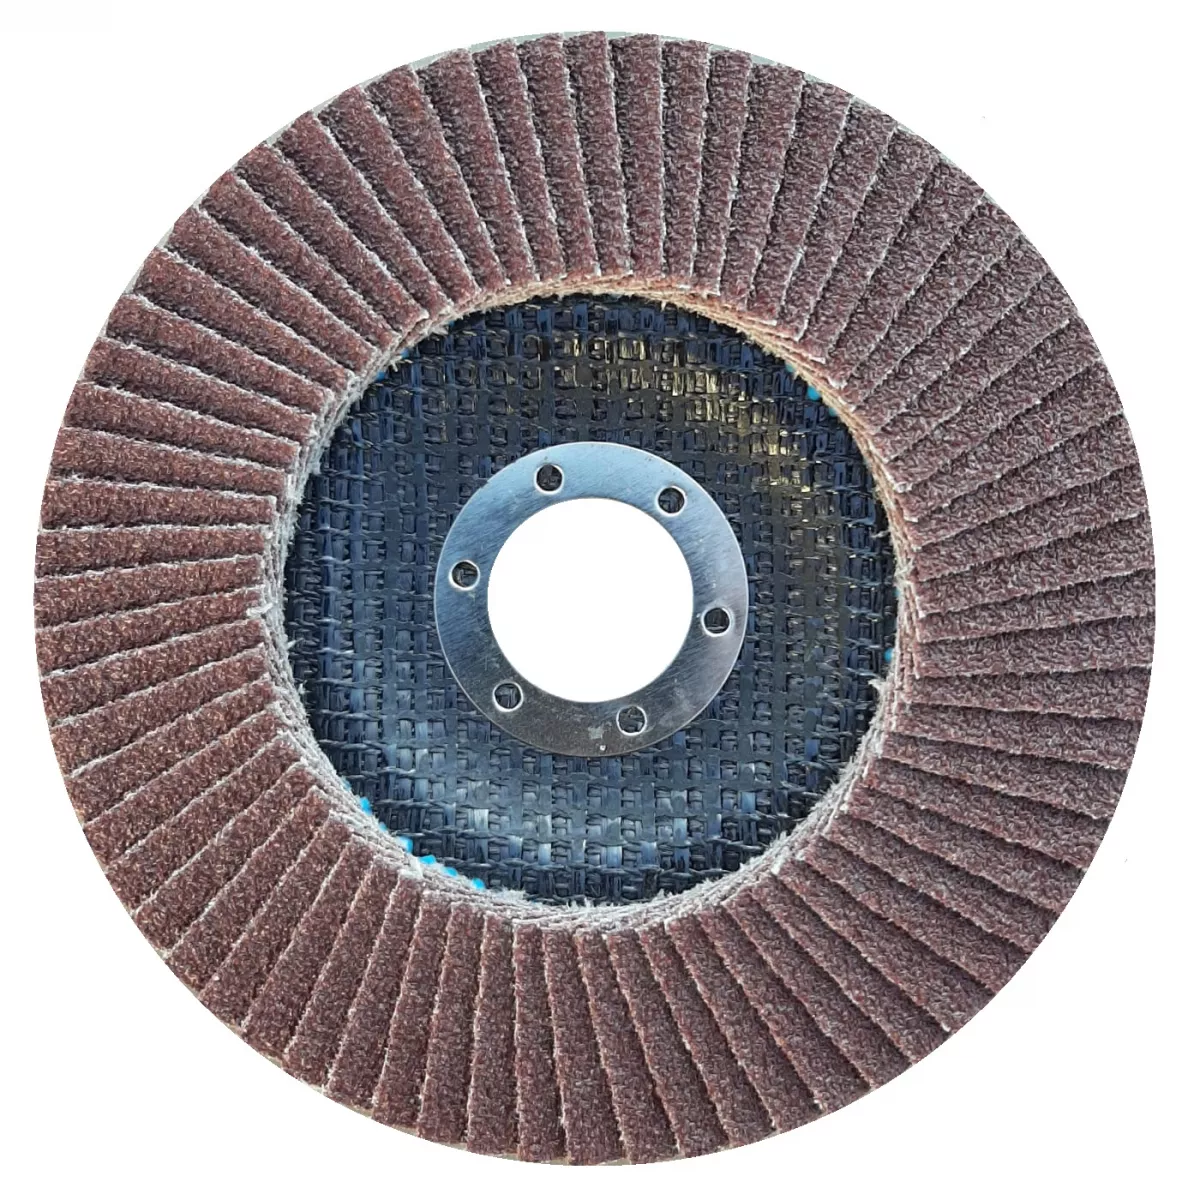 Disc lamelar frontal XA167 125x22,23 FSC12 P40, [],oldindustry.ro